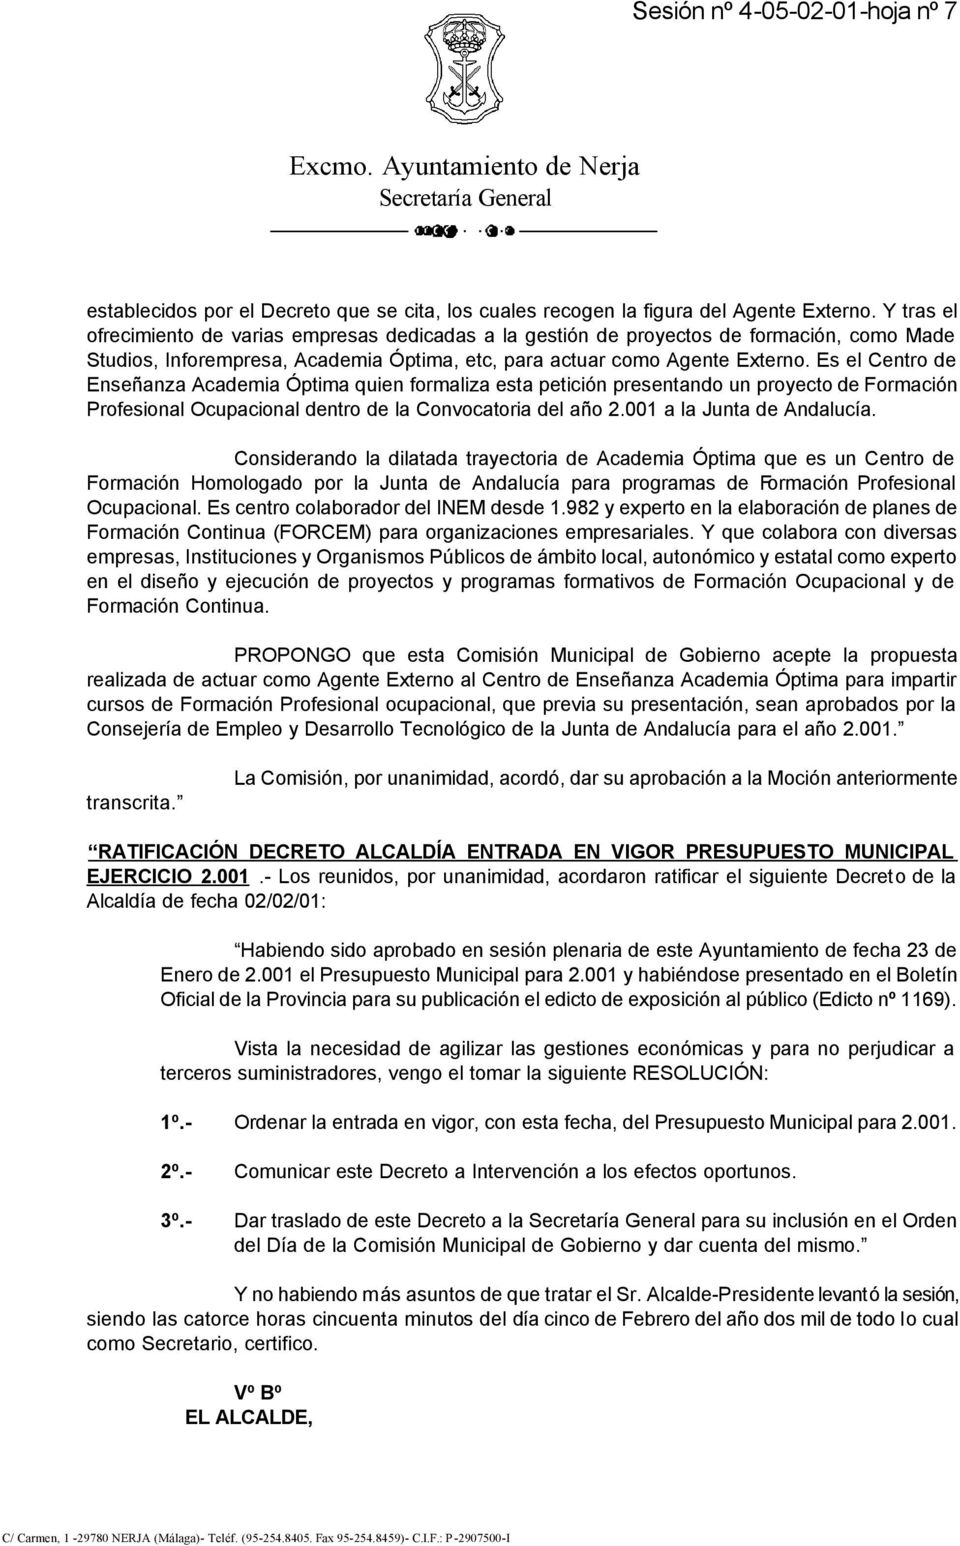 Es el Centro de Enseñanza Academia Óptima quien formaliza esta petición presentando un proyecto de Formación Profesional Ocupacional dentro de la Convocatoria del año 2.001 a la Junta de Andalucía.